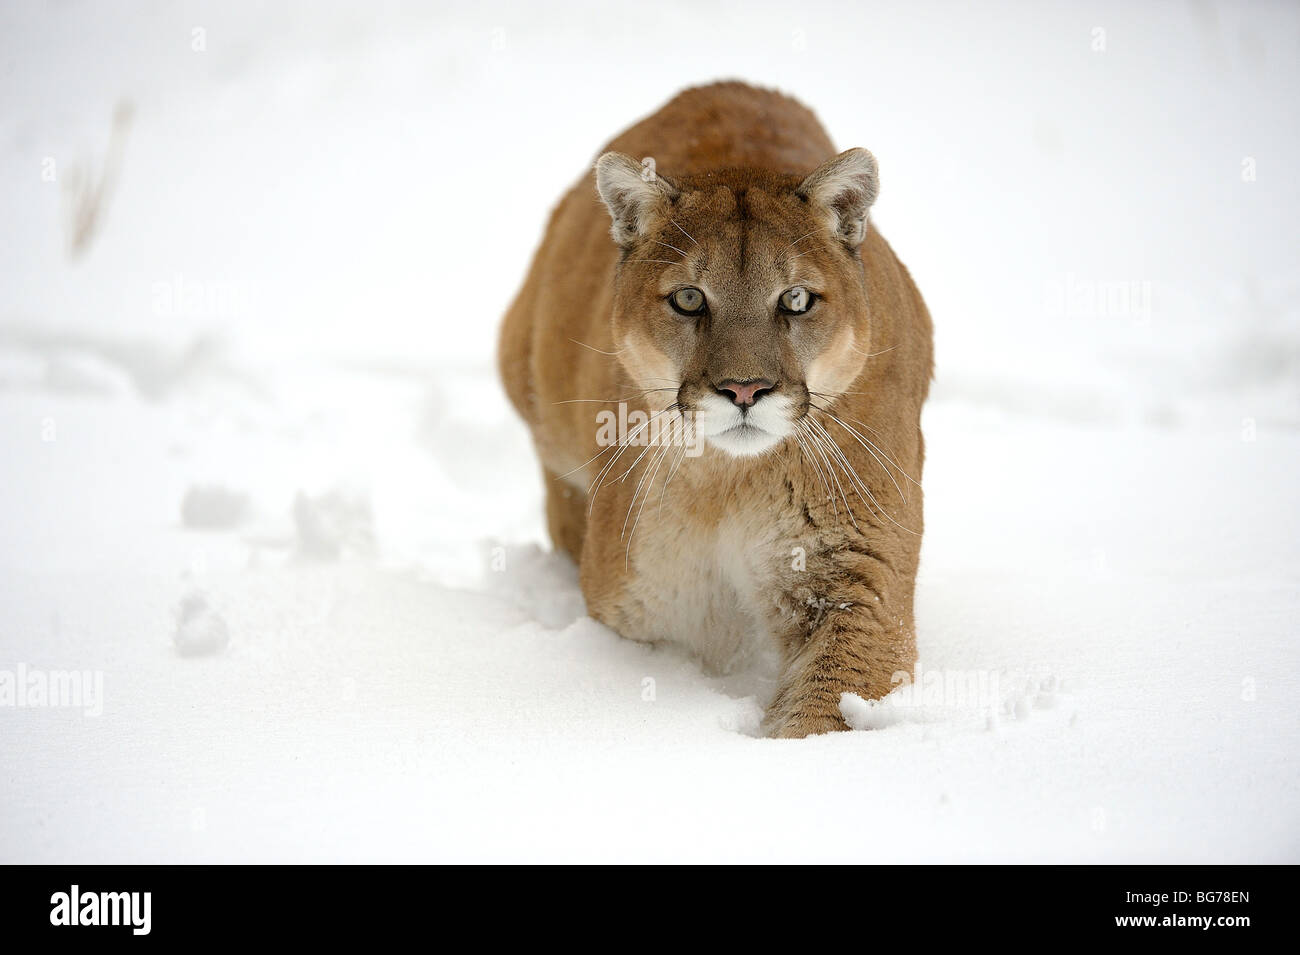 El Puma, El león de montaña (Puma concolor) en cautiverio en su hábitat invernal, Bozeman, EE.UU Fotografía de stock - Alamy